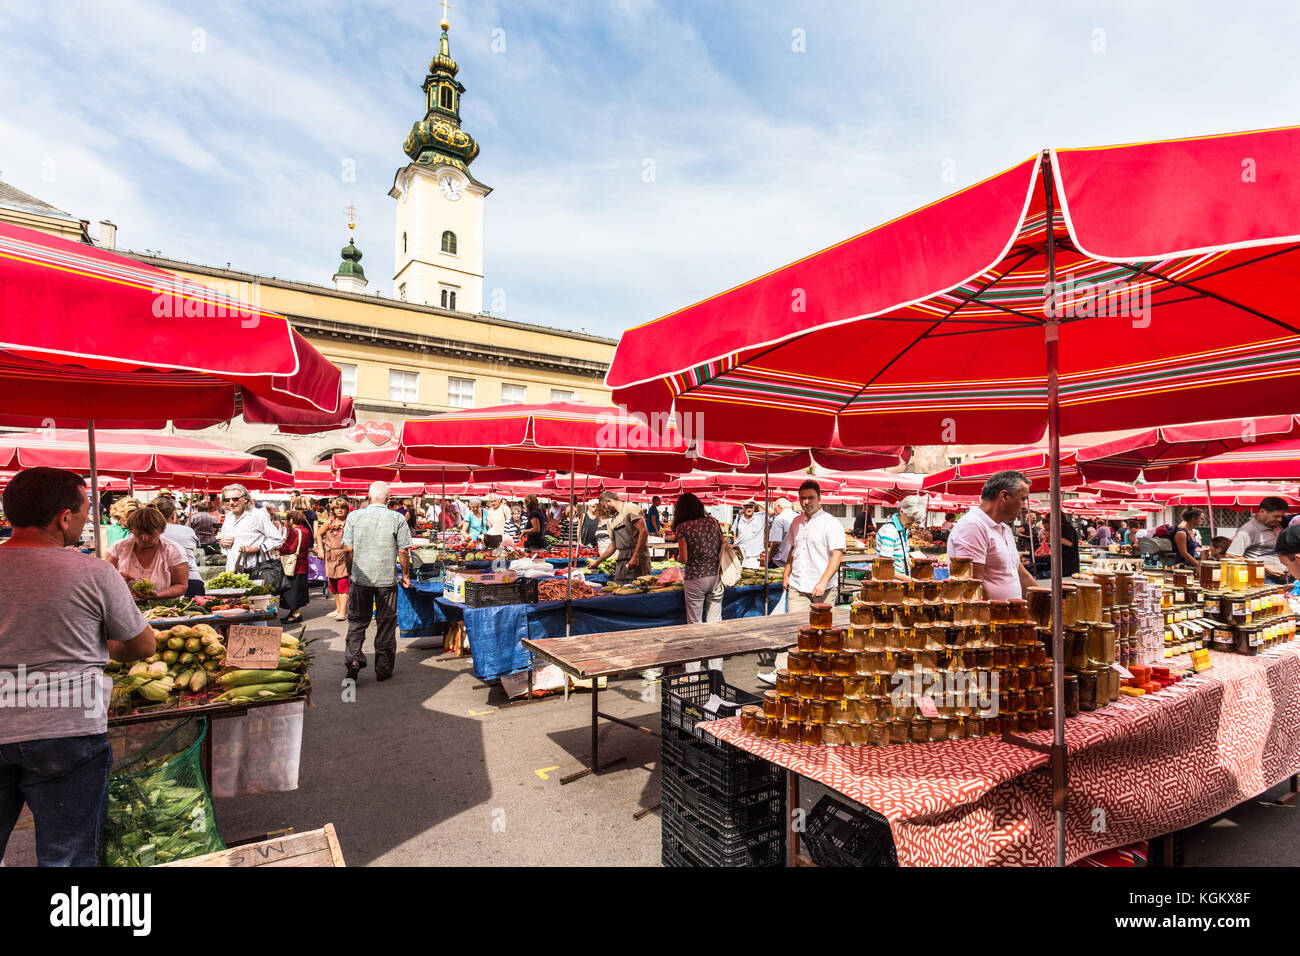 Zagreb, Croatie - août 28, 2017 : les gens boutique dans les fruits frais et vegetebles au cœur de Zagreb, capitale de la Croatie Banque D'Images